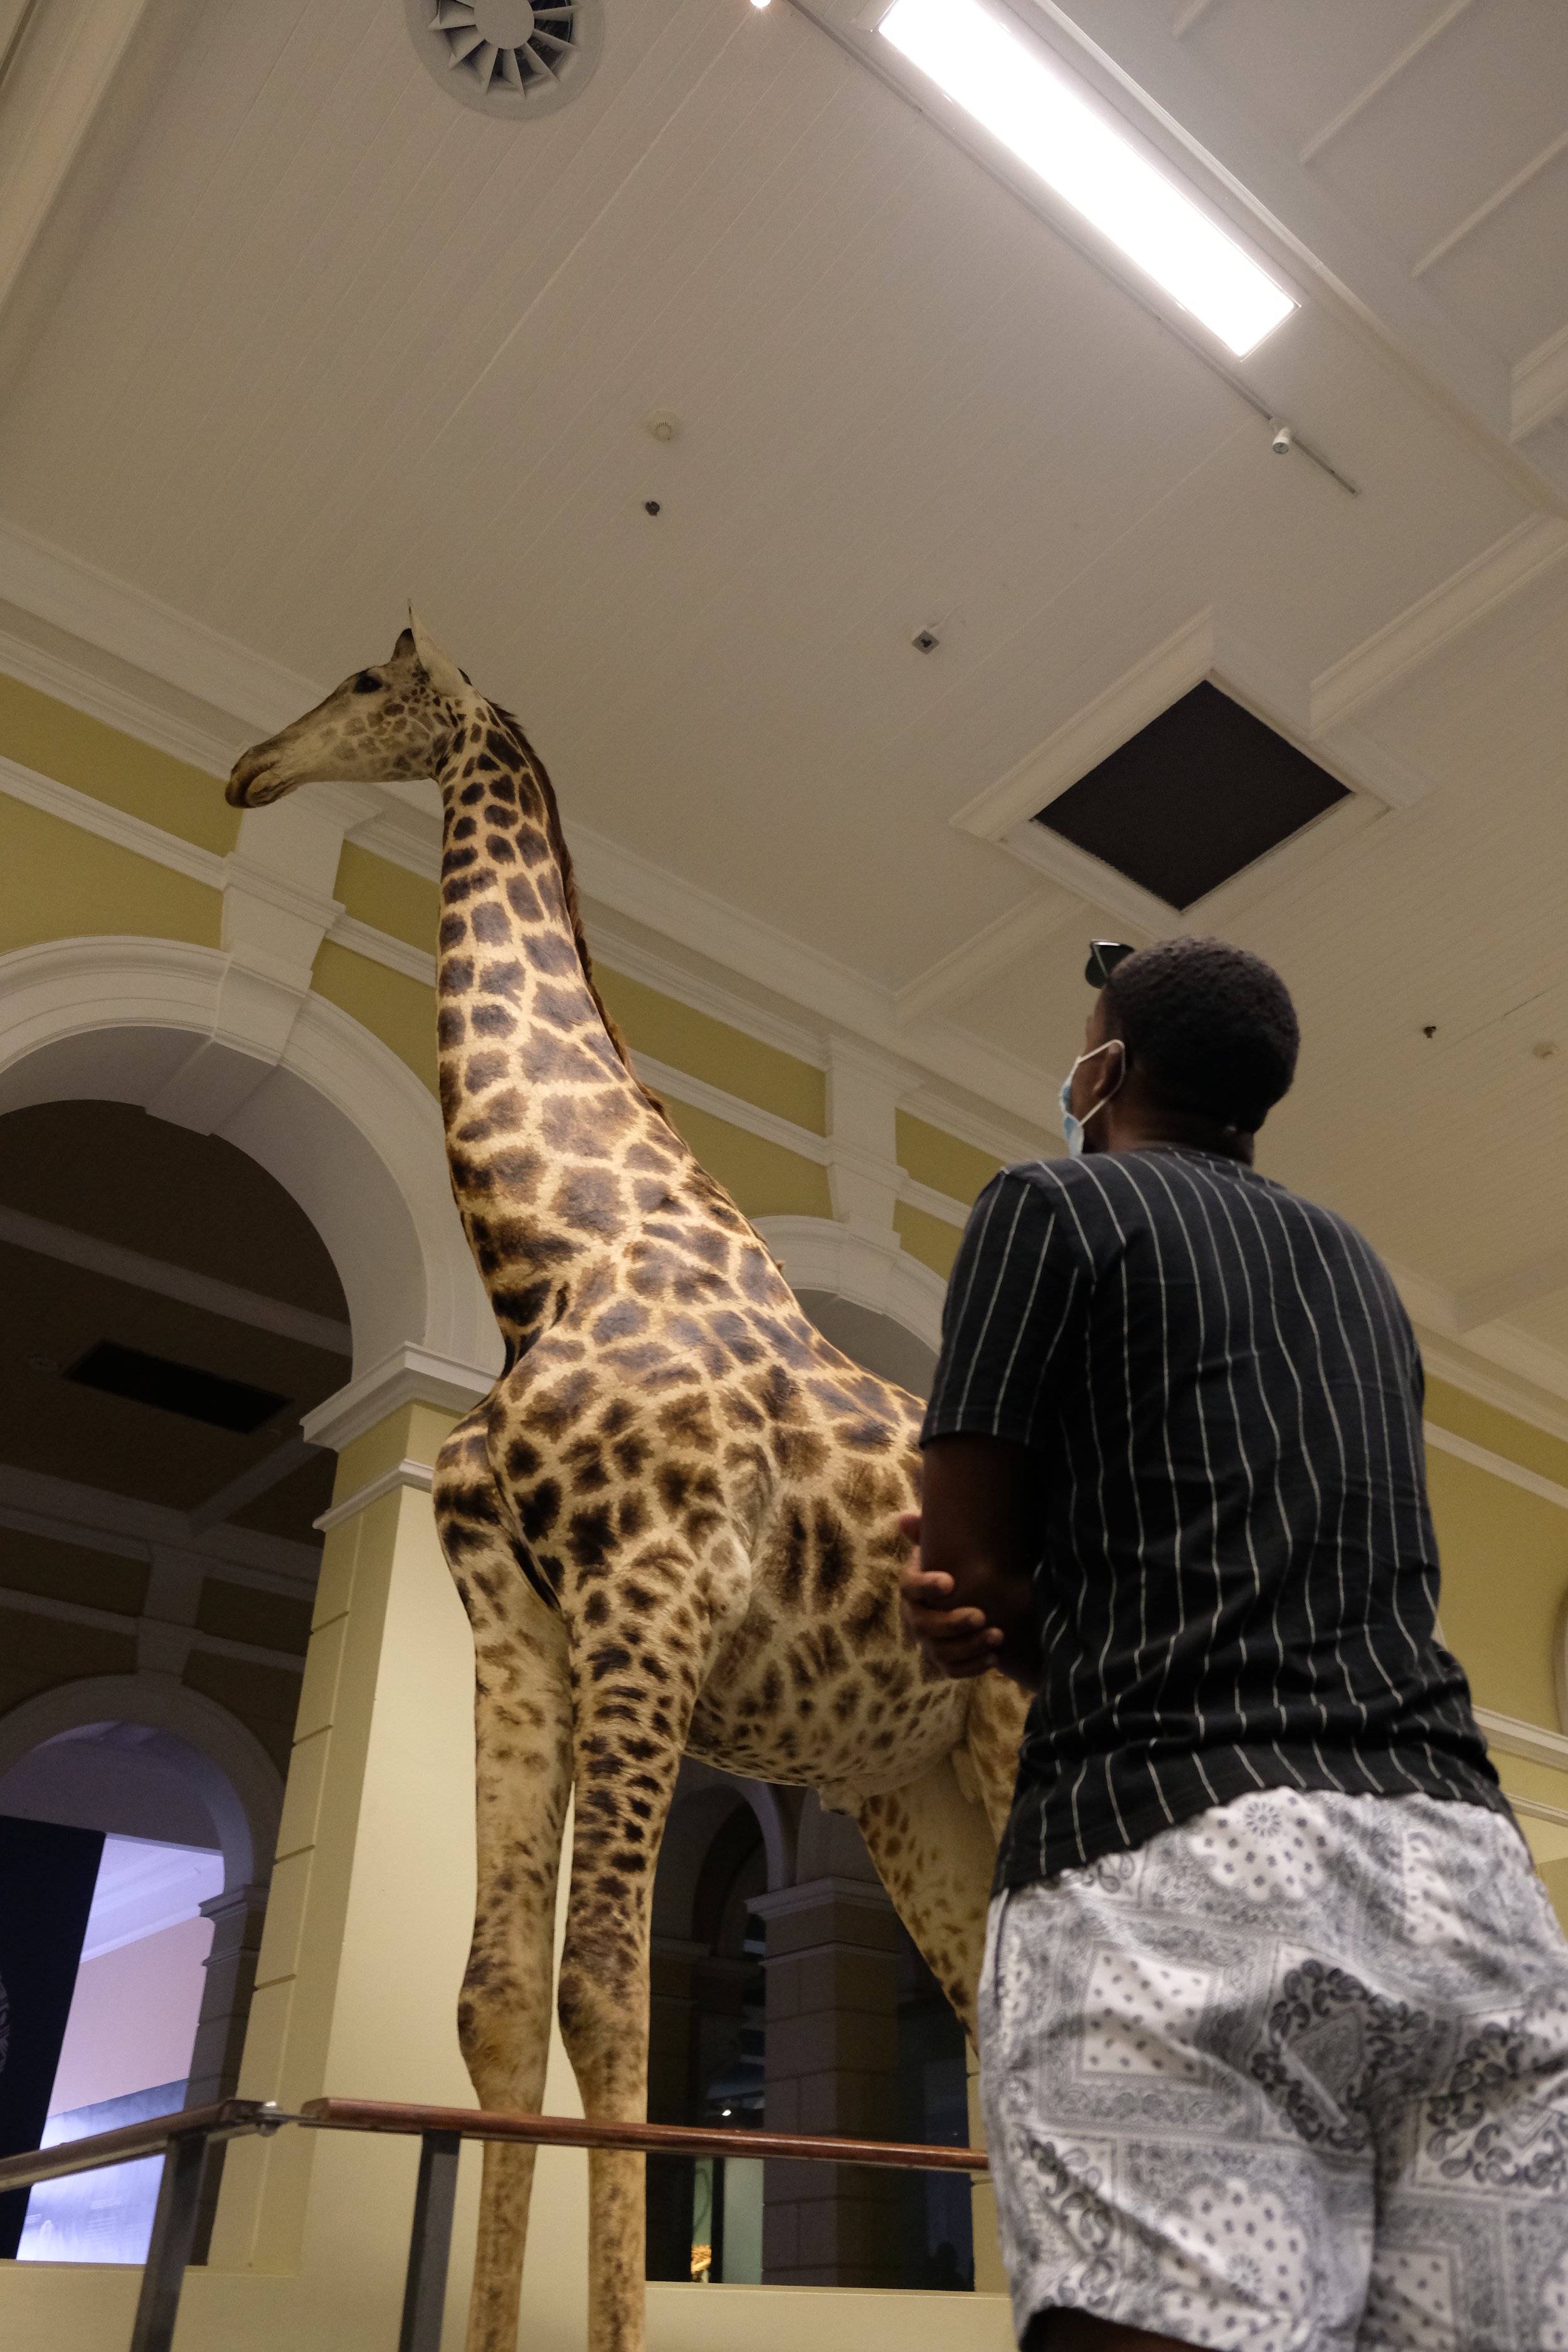 Life-size giraffe